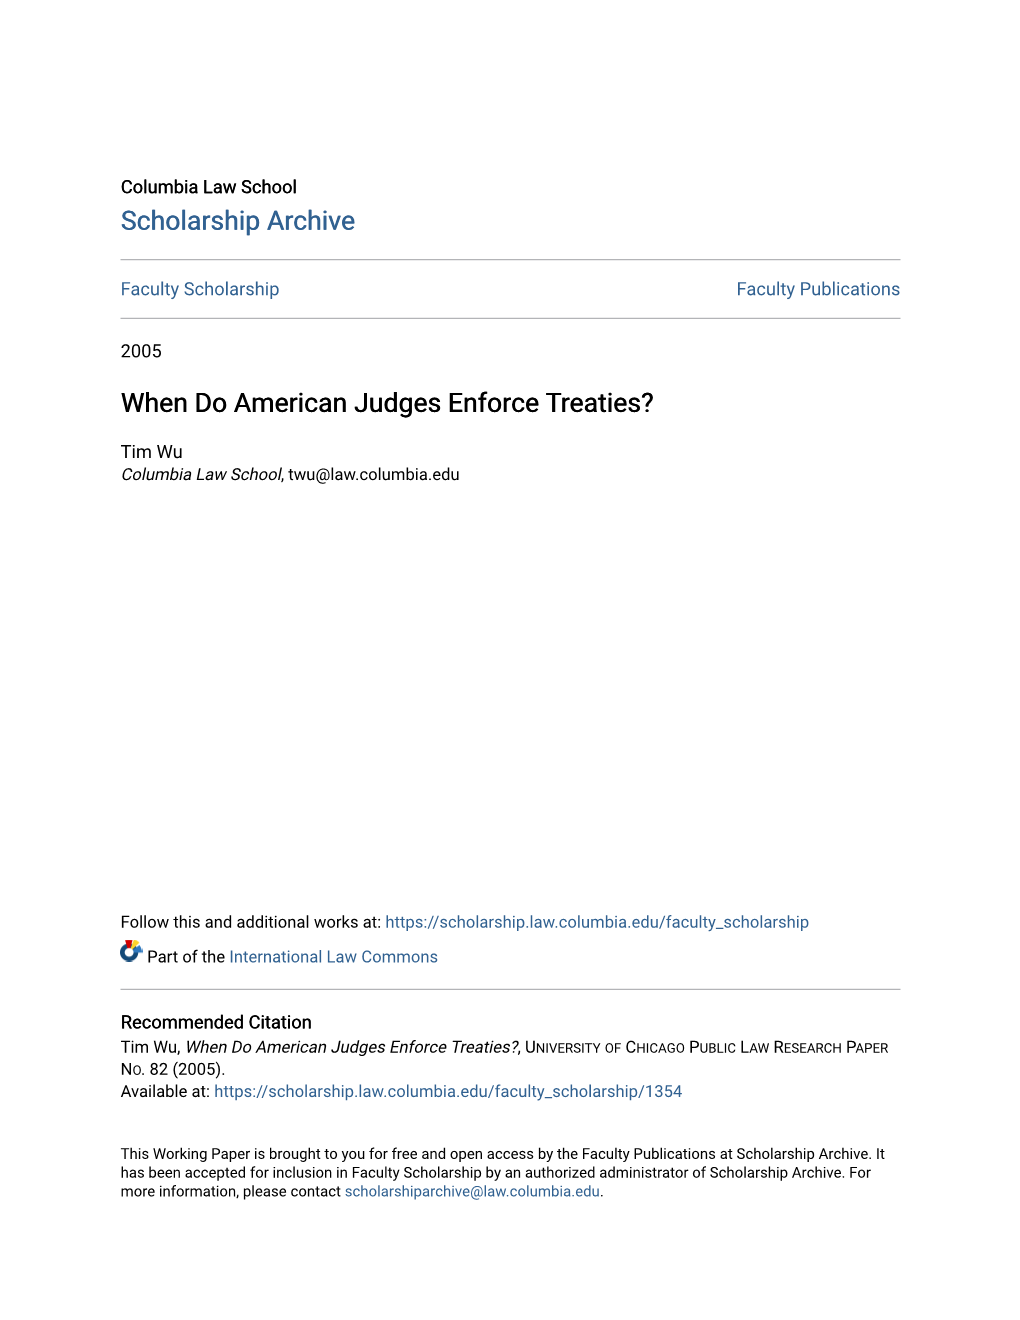 When Do American Judges Enforce Treaties?